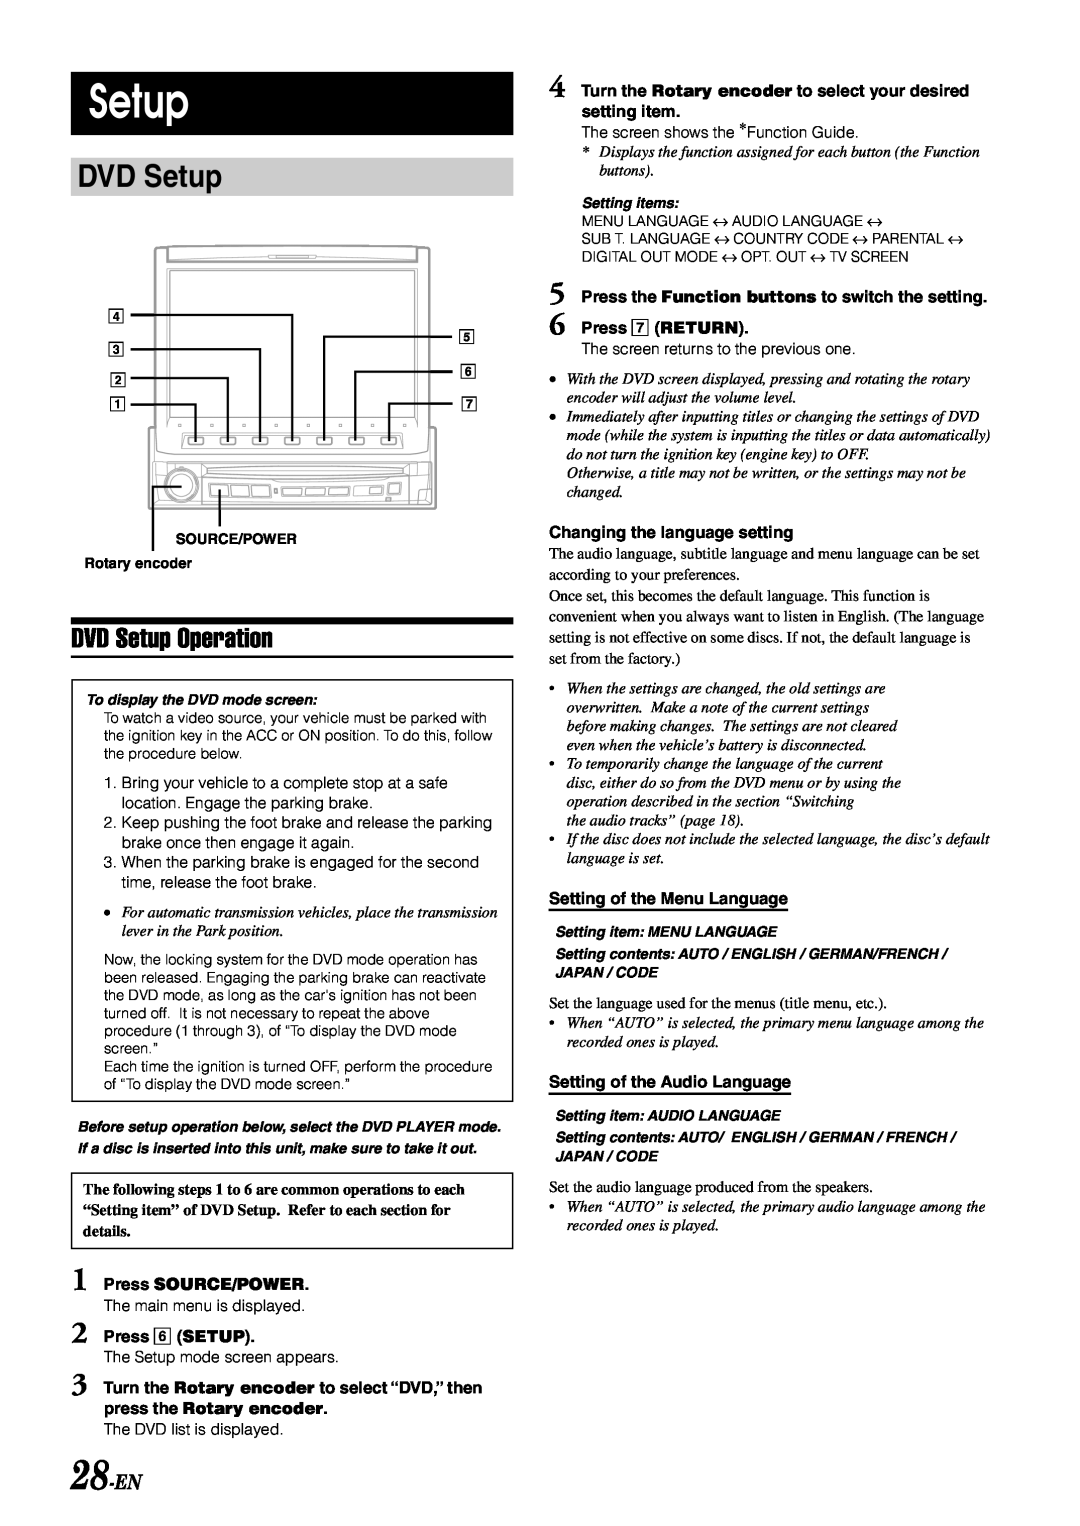 Alpine IVA-D900 owner manual DVD Setup Operation, 28-EN 